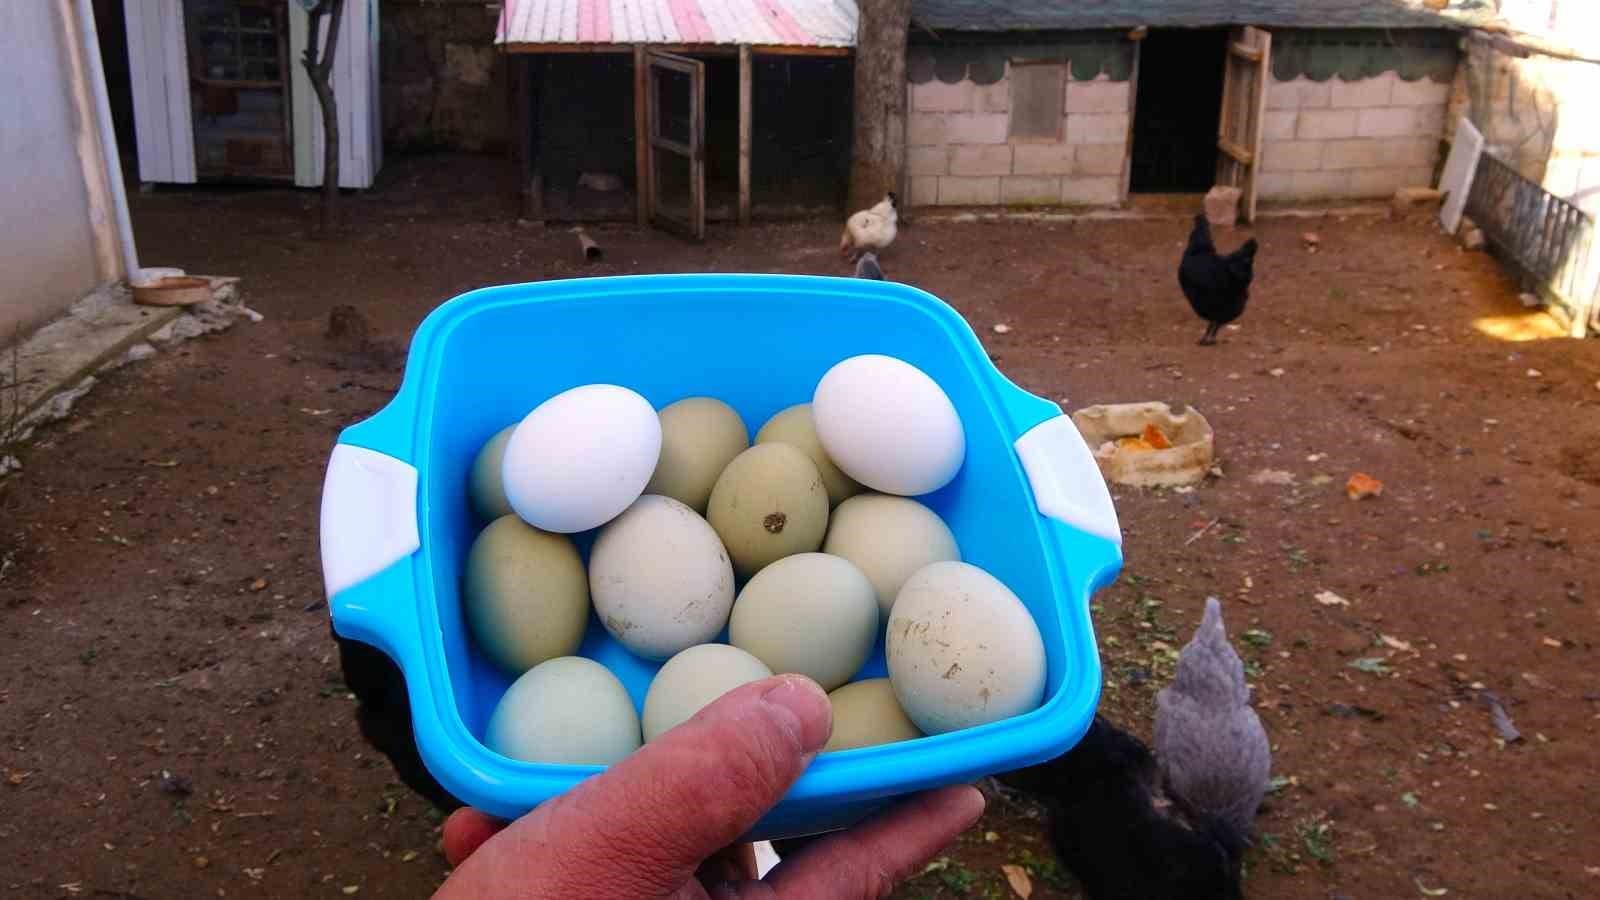 yesil yumurtanin tanesi 20 liradan satiliyor 3 OuFg1eO9